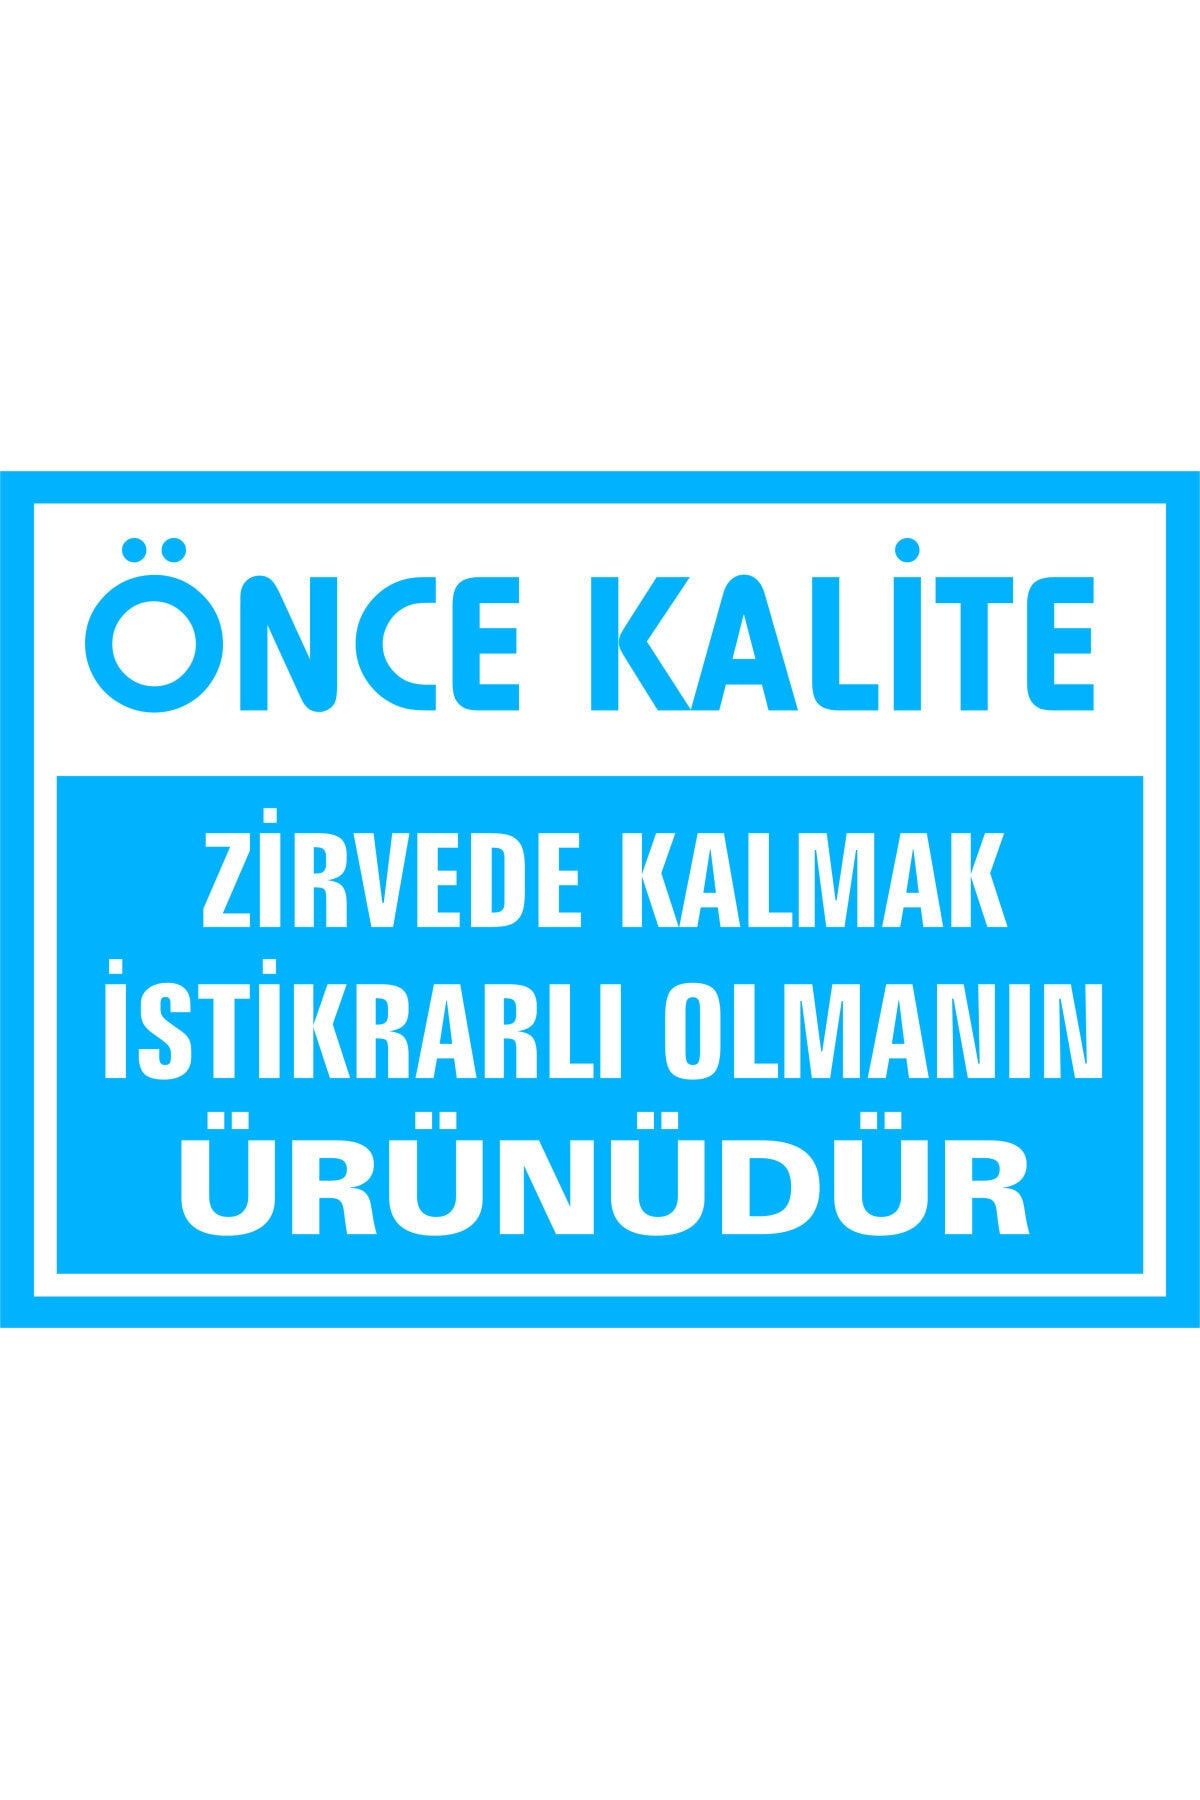 İzmir Serigrafi Önce Kalite Zirvede Kalmak Istikrarlı Olmanın Ürünüdür Galvaniz Uyarı Levhası 17,5 X 25 Cm